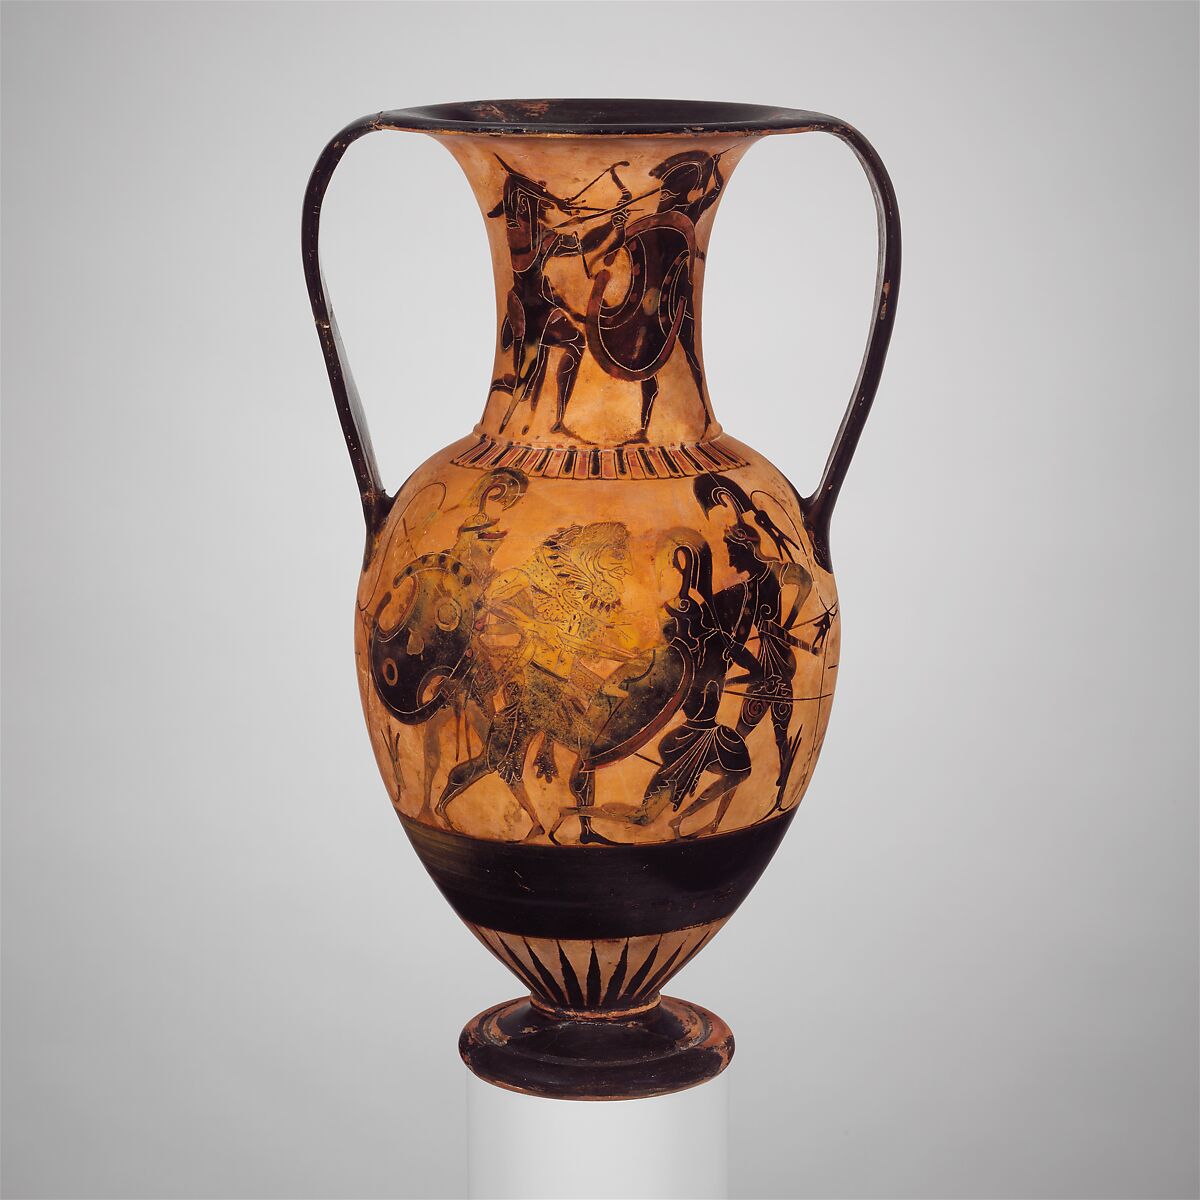 Antigua Grecia Dionysus Oinochoe Amphora Jarrón Cerámica Talos Artifacts Aquiles on Chariot